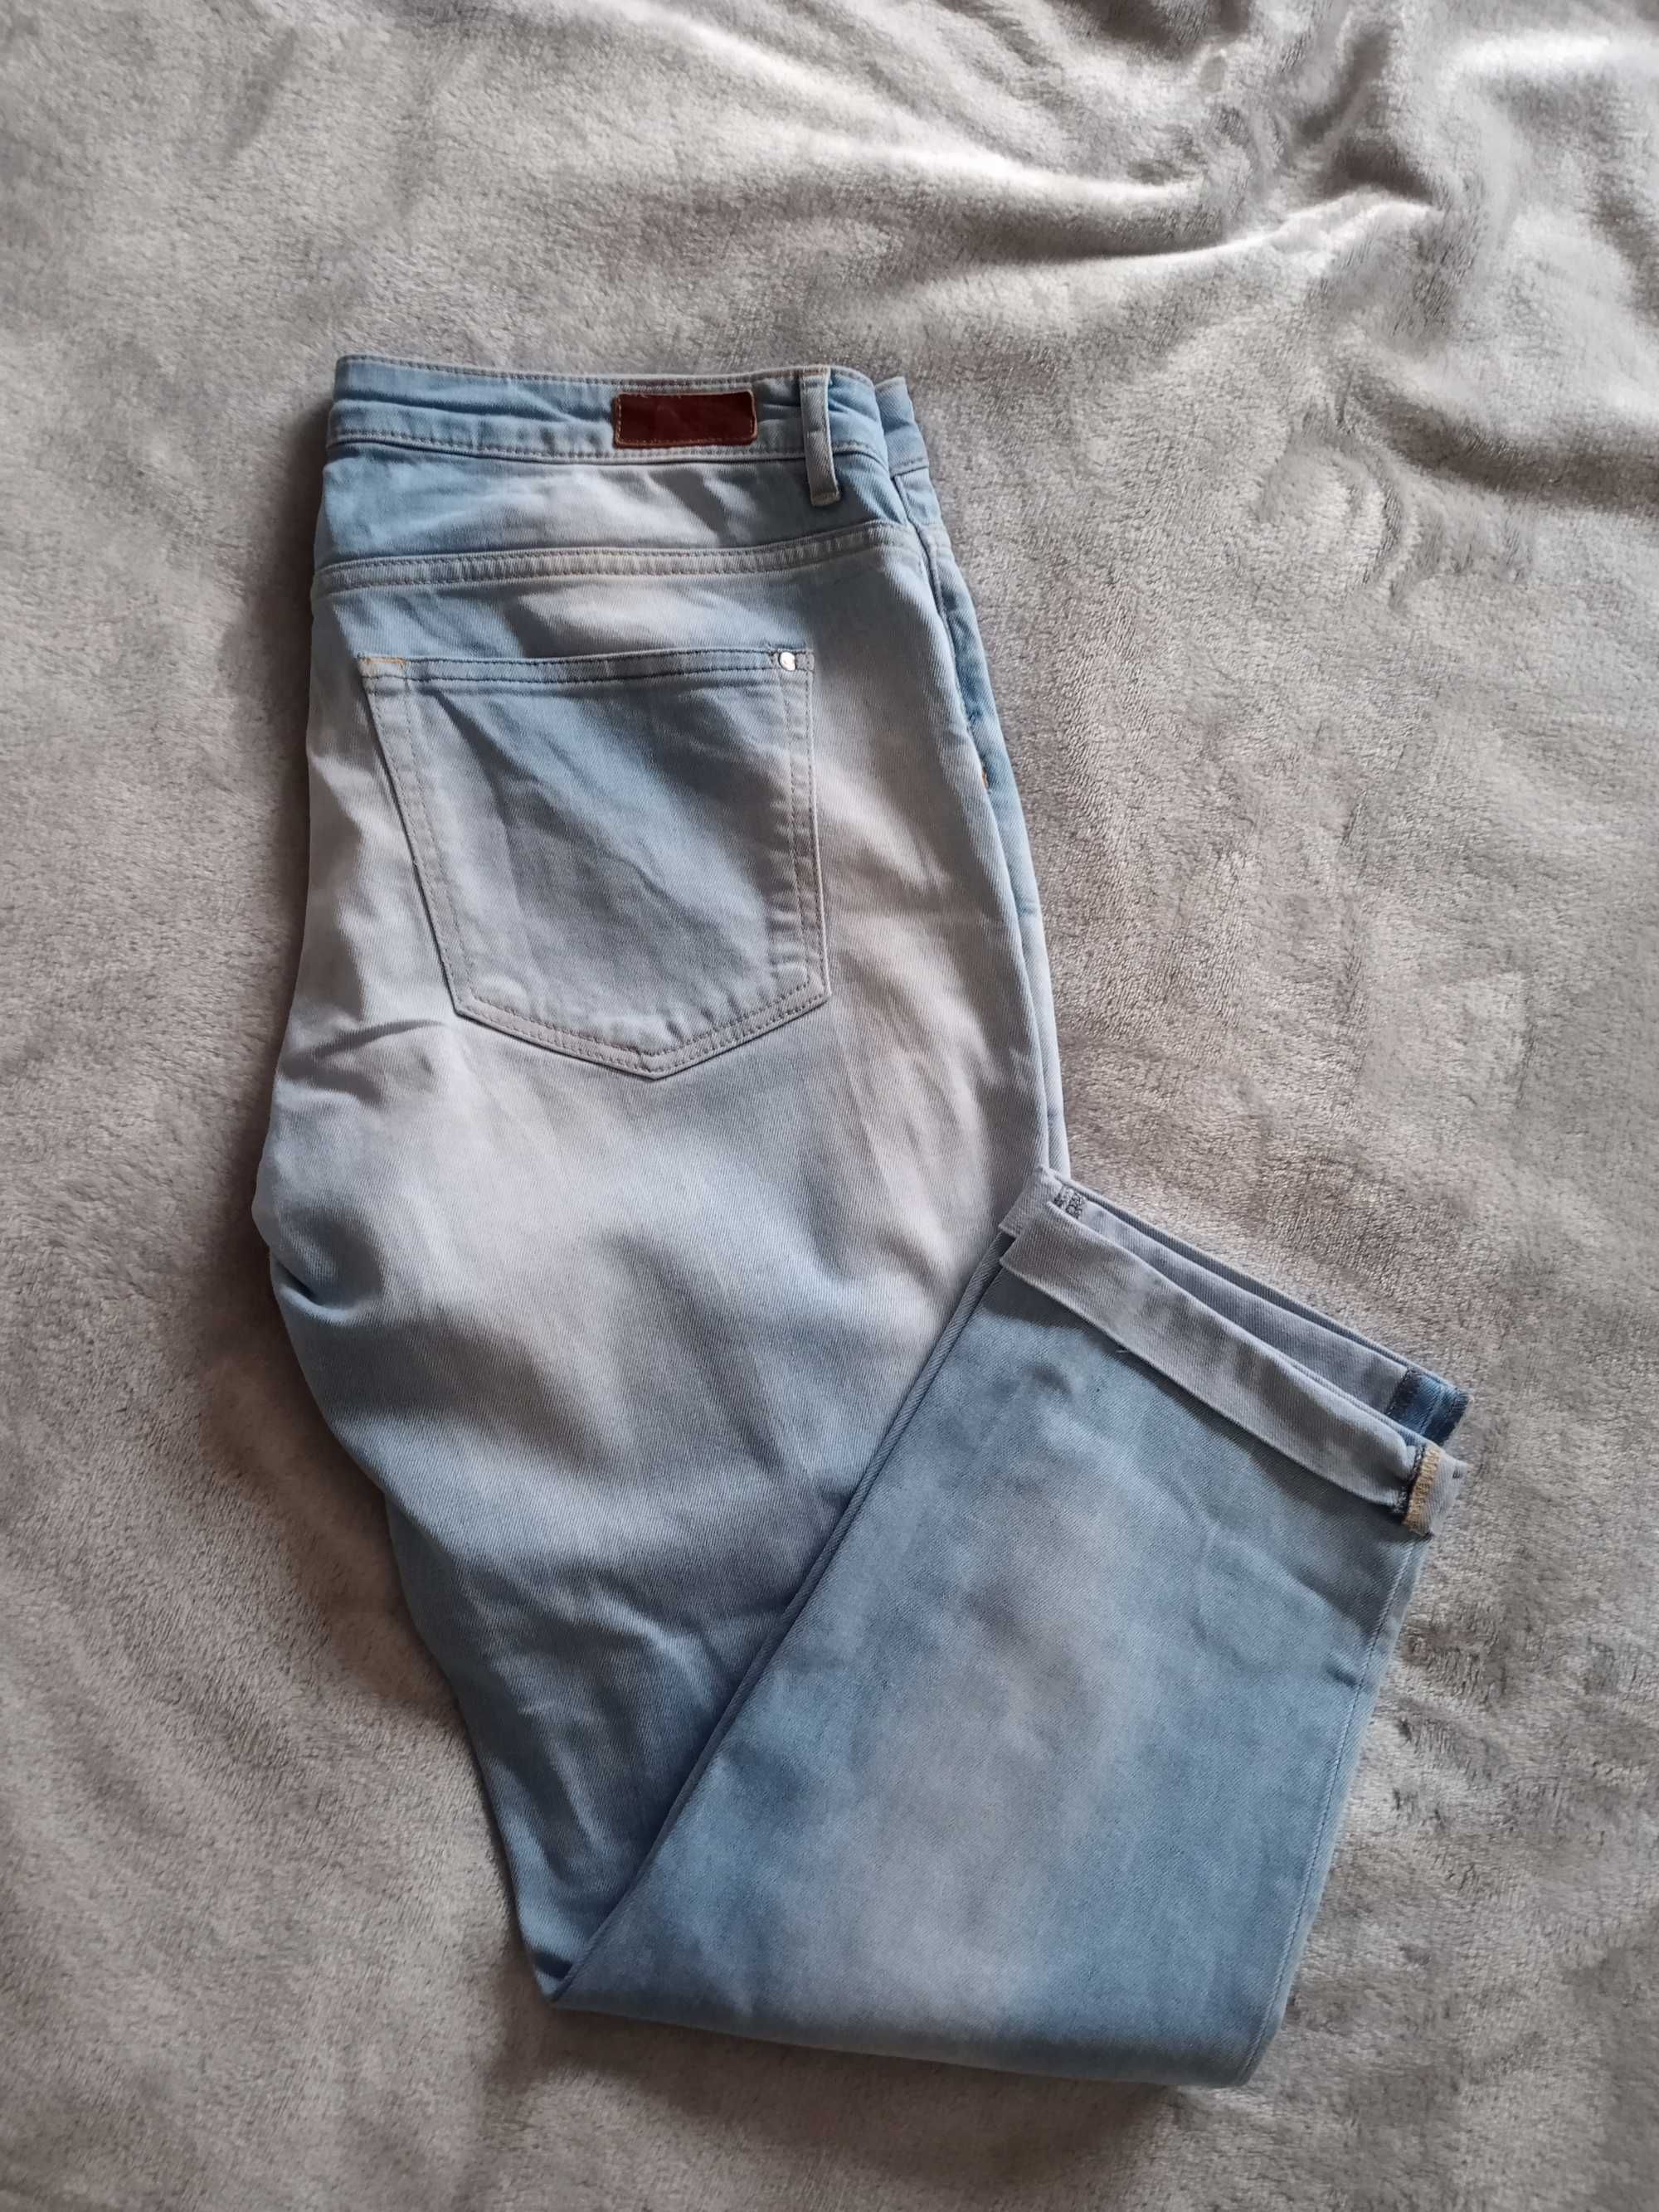 Лот дамски дънки и джинси 42, L/XL - H&M и Blue ridge